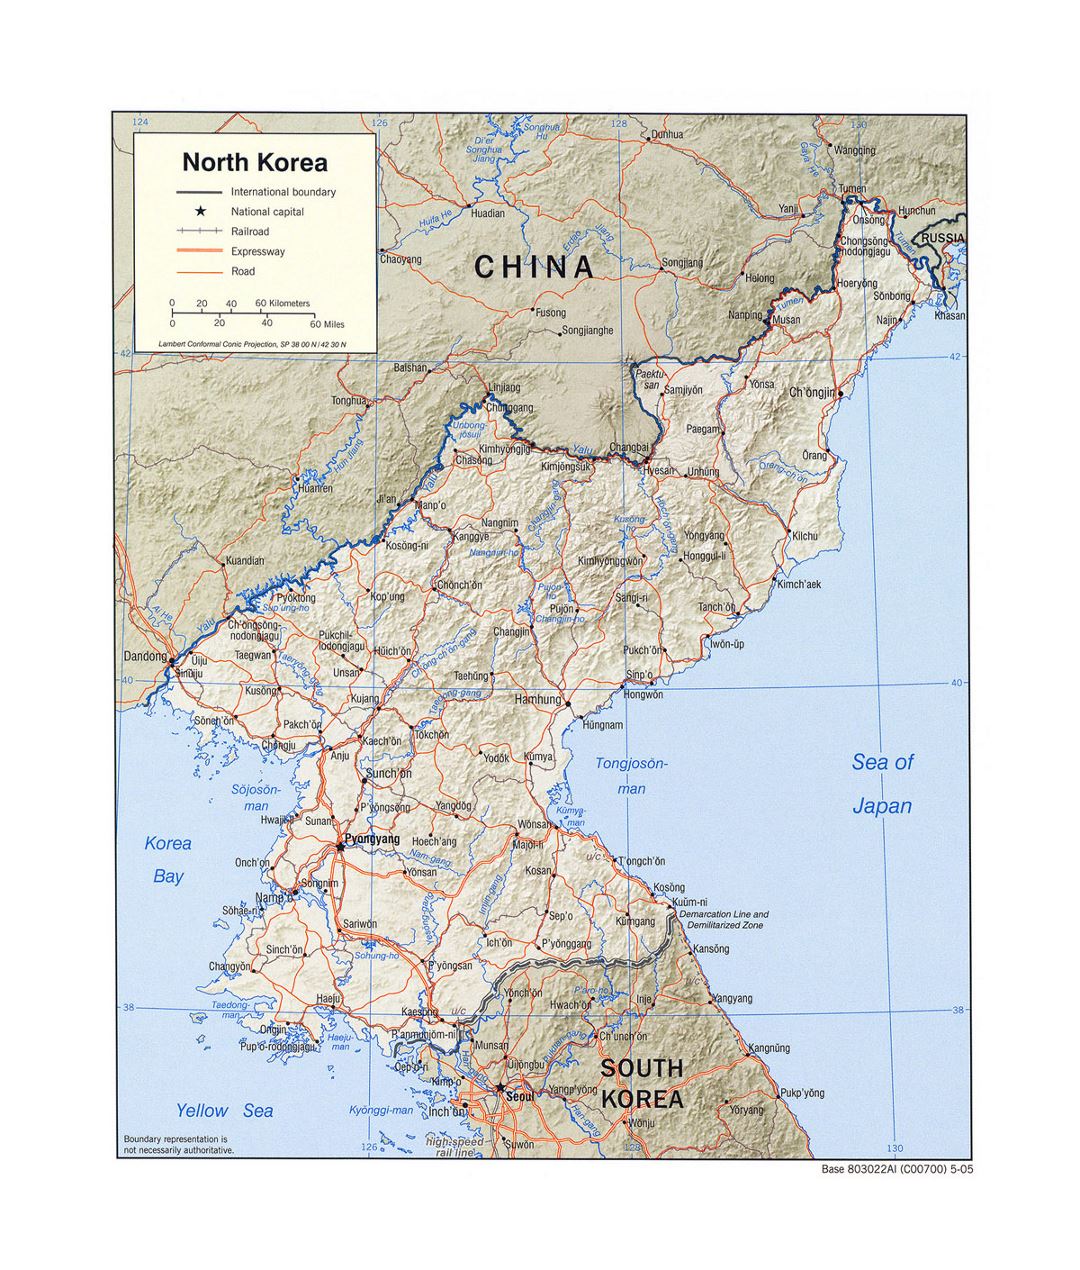 Detallado mapa político de Corea del Norte con socorro, carreteras, ferrocarriles y principales ciudades - 2005